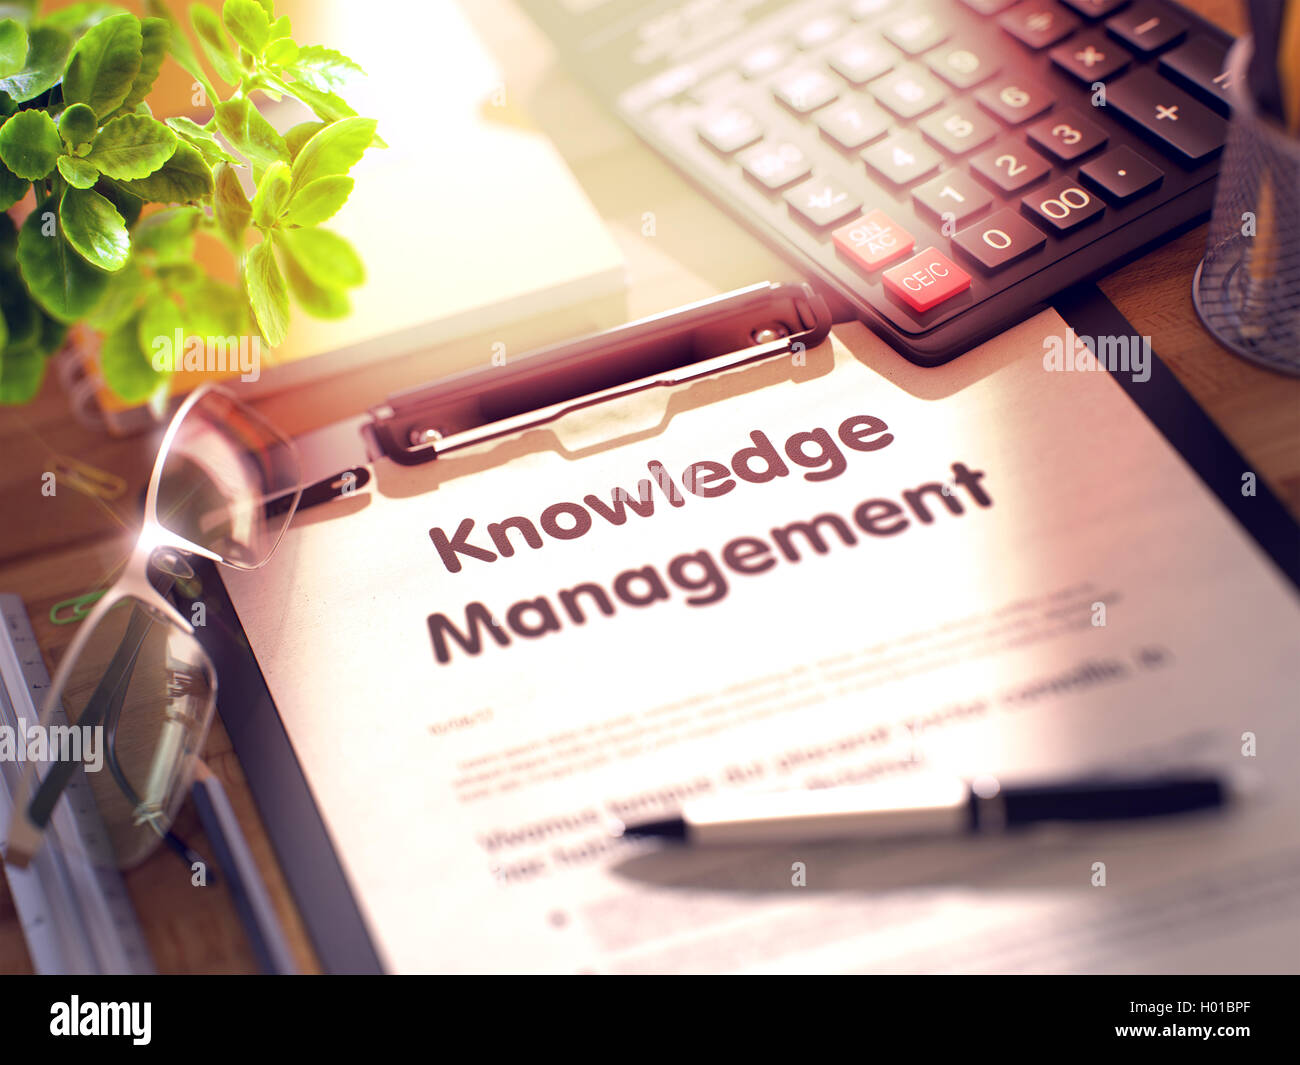 La gestione della conoscenza - testo negli Appunti. 3D. Foto Stock